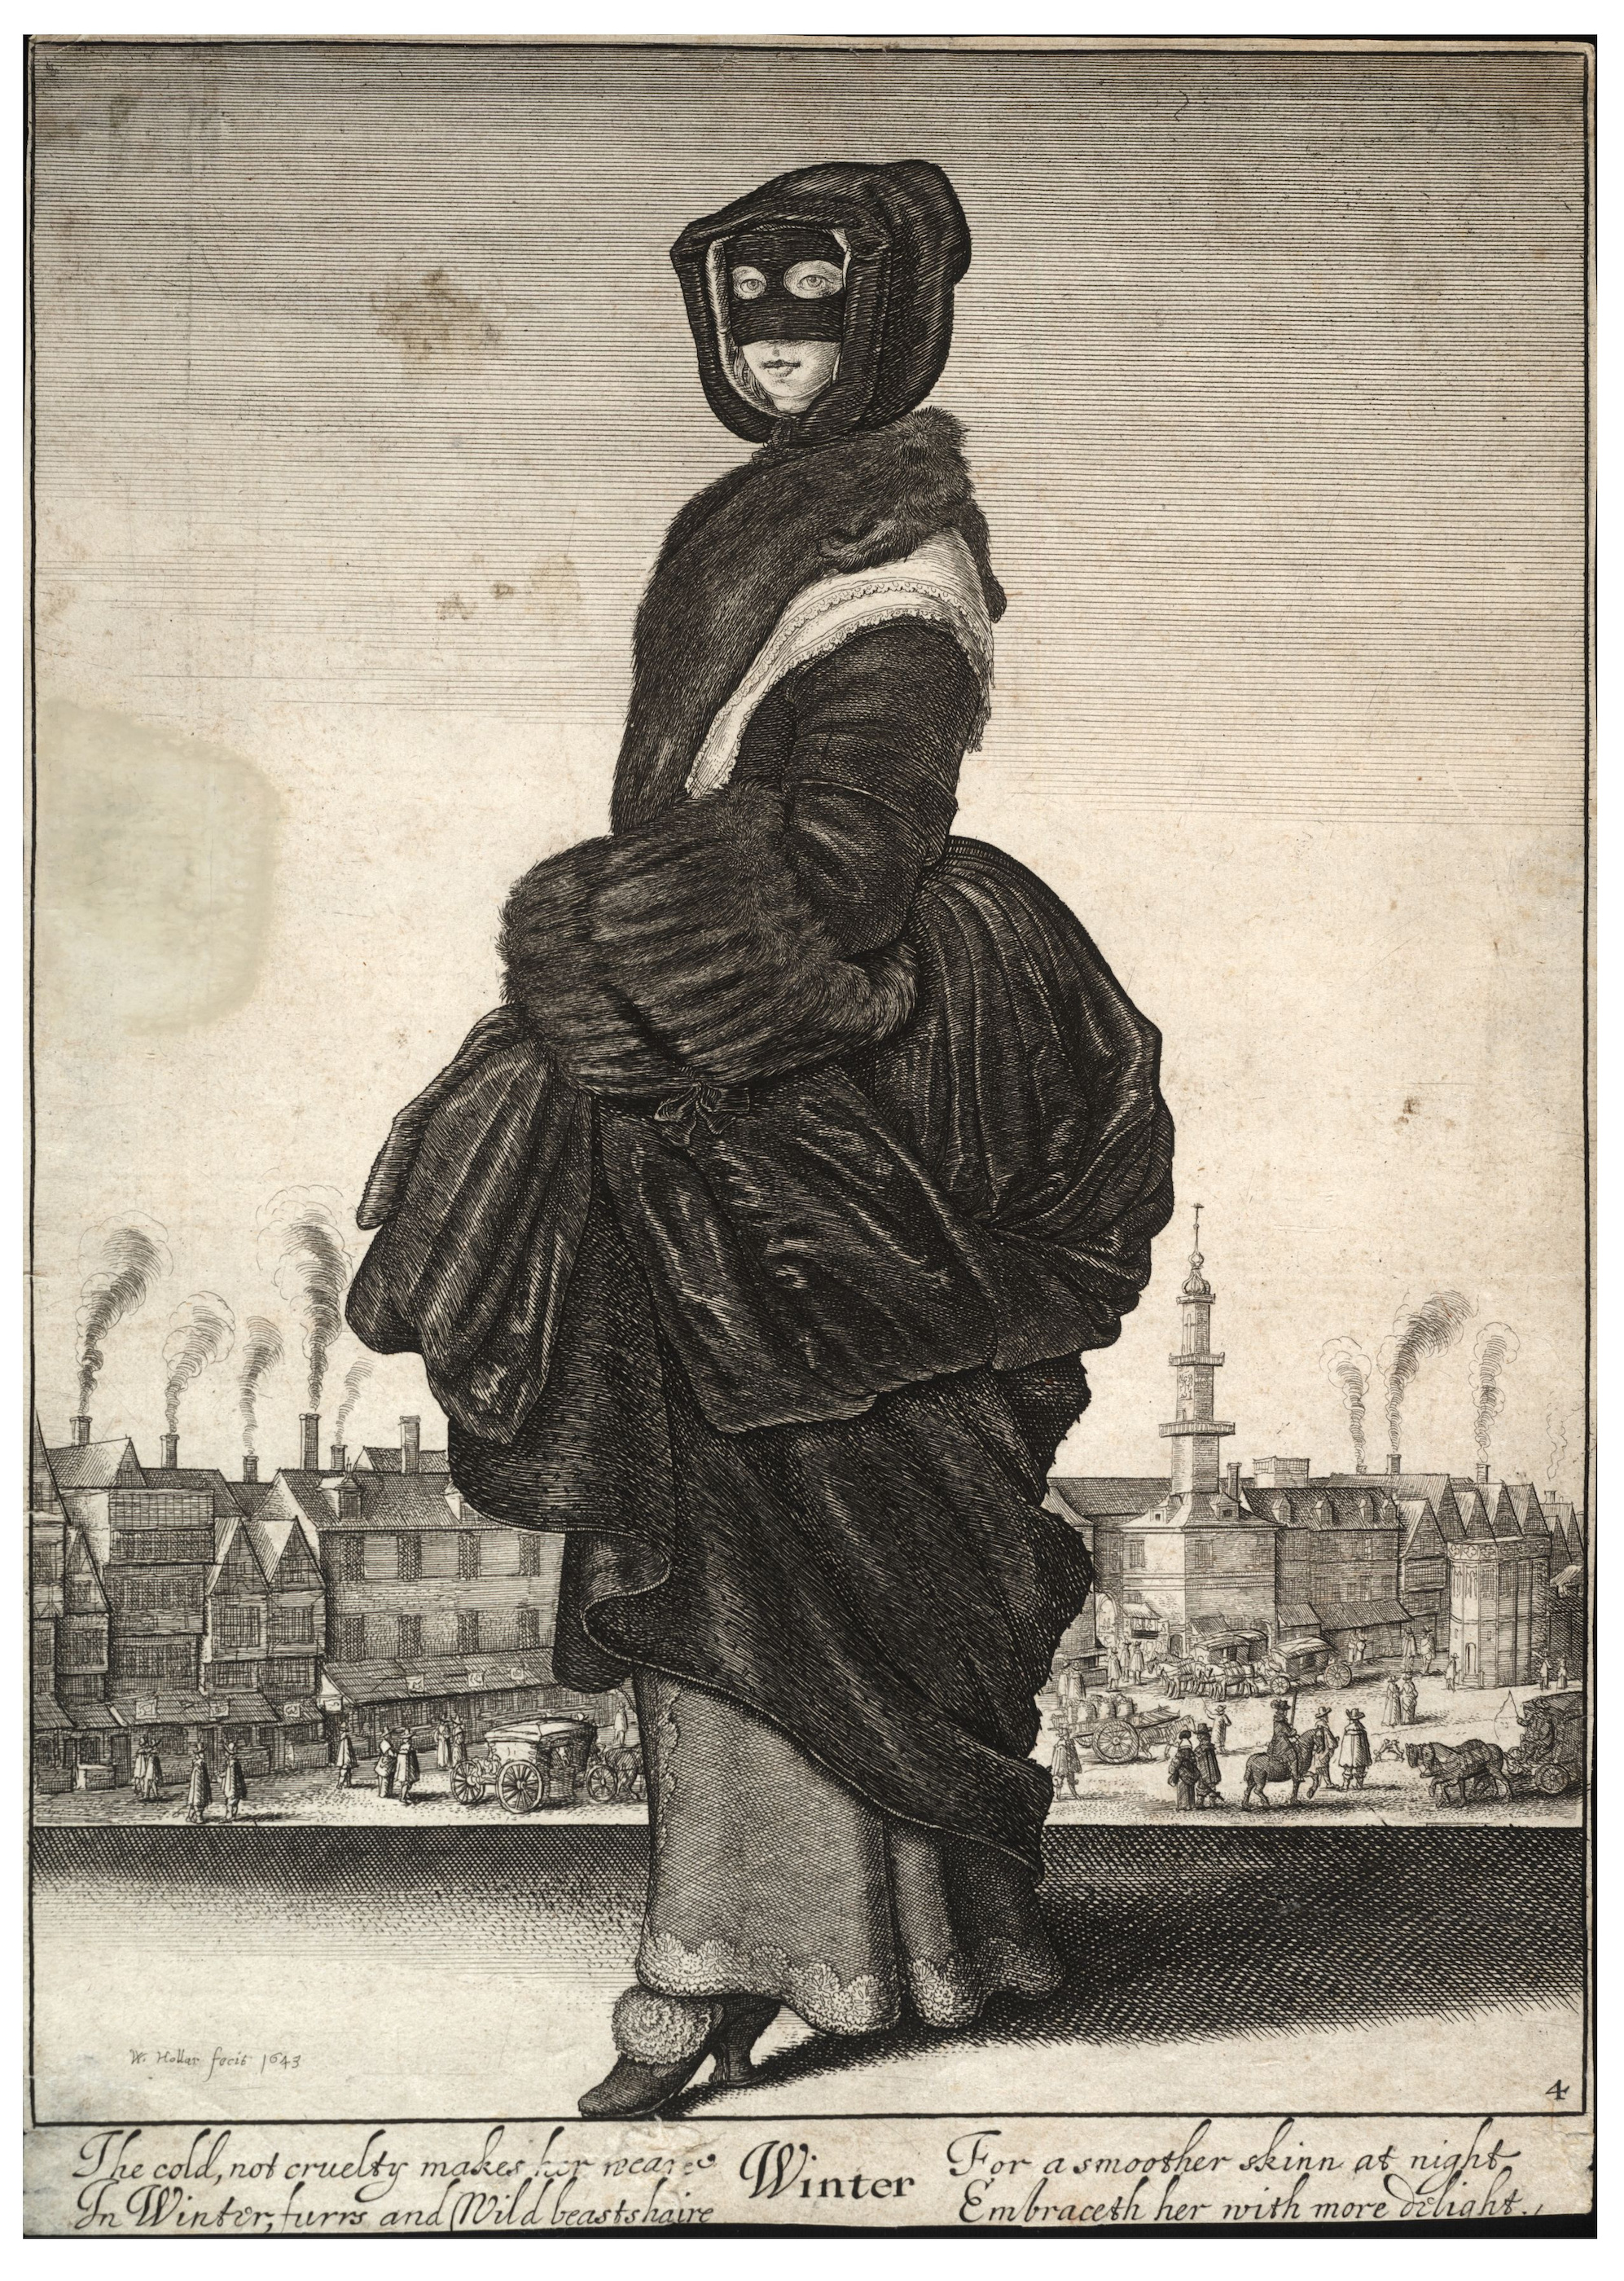 冬 by 文策斯劳斯 霍拉尔 - 1642/1643 - 26 x 18.6 厘米 大英博物馆